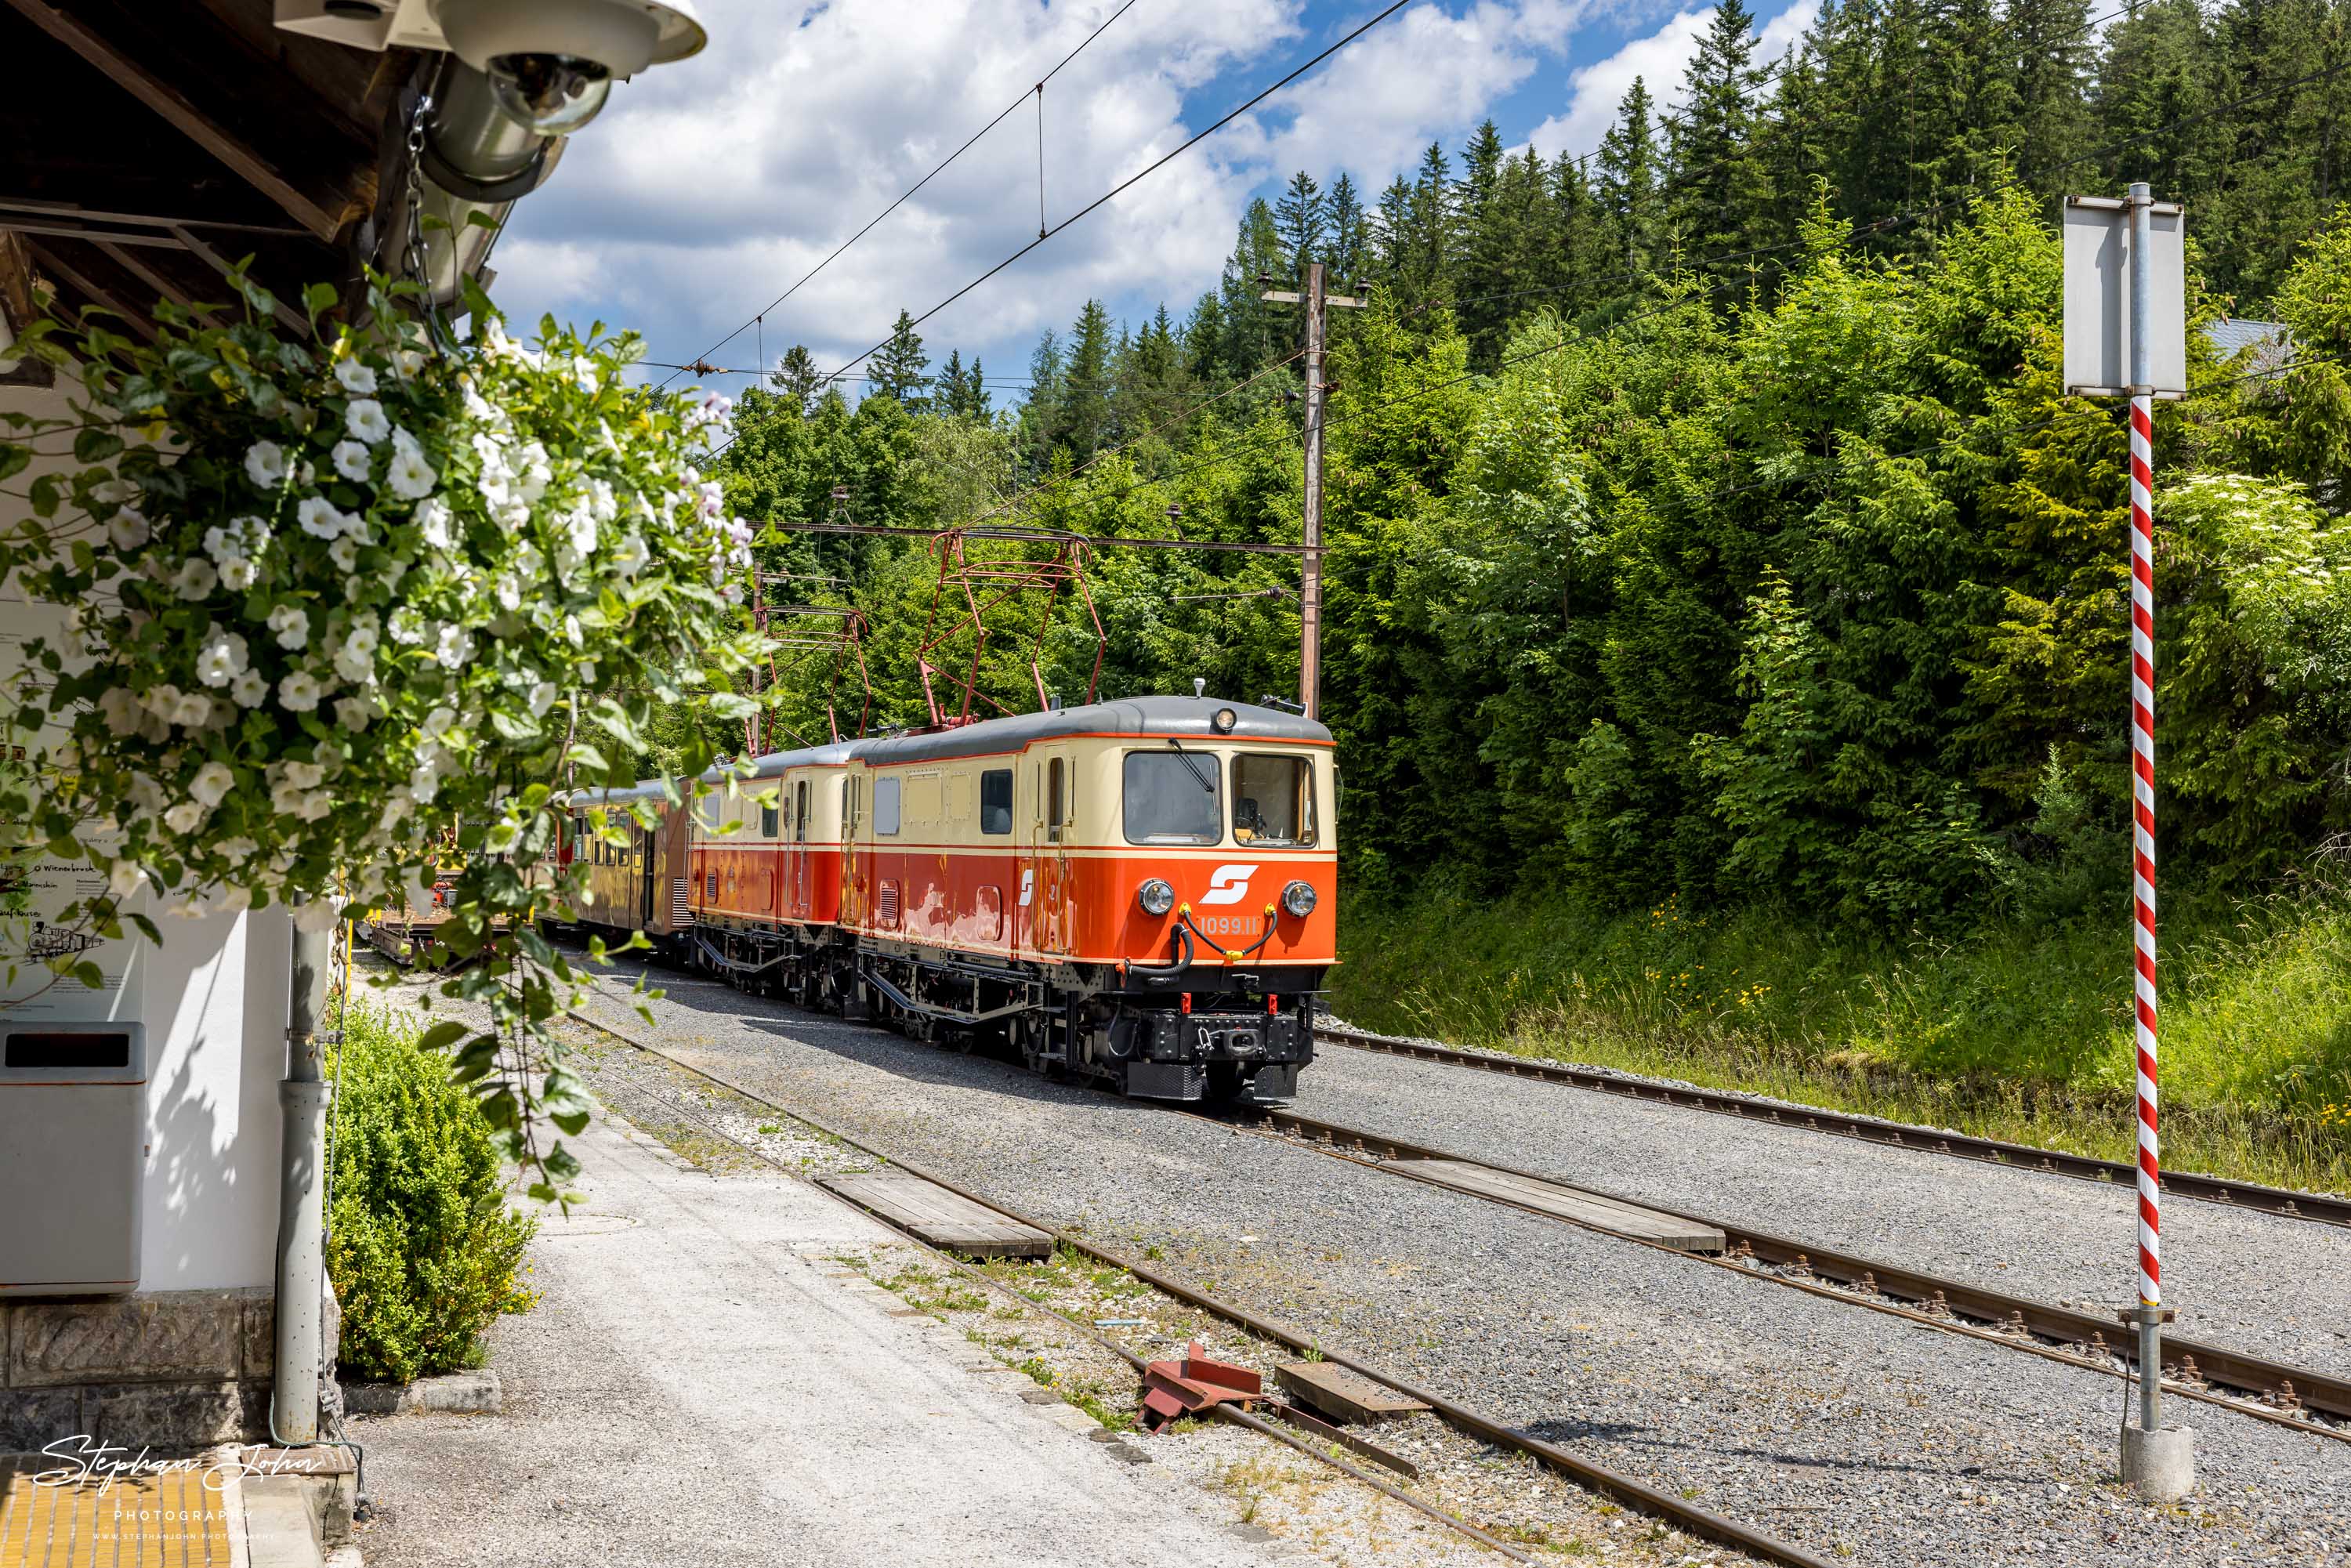 Zug 80963 mit Lok 1099.11 und 1099.14 nach Mariazell im Bahnhof Mitterbach